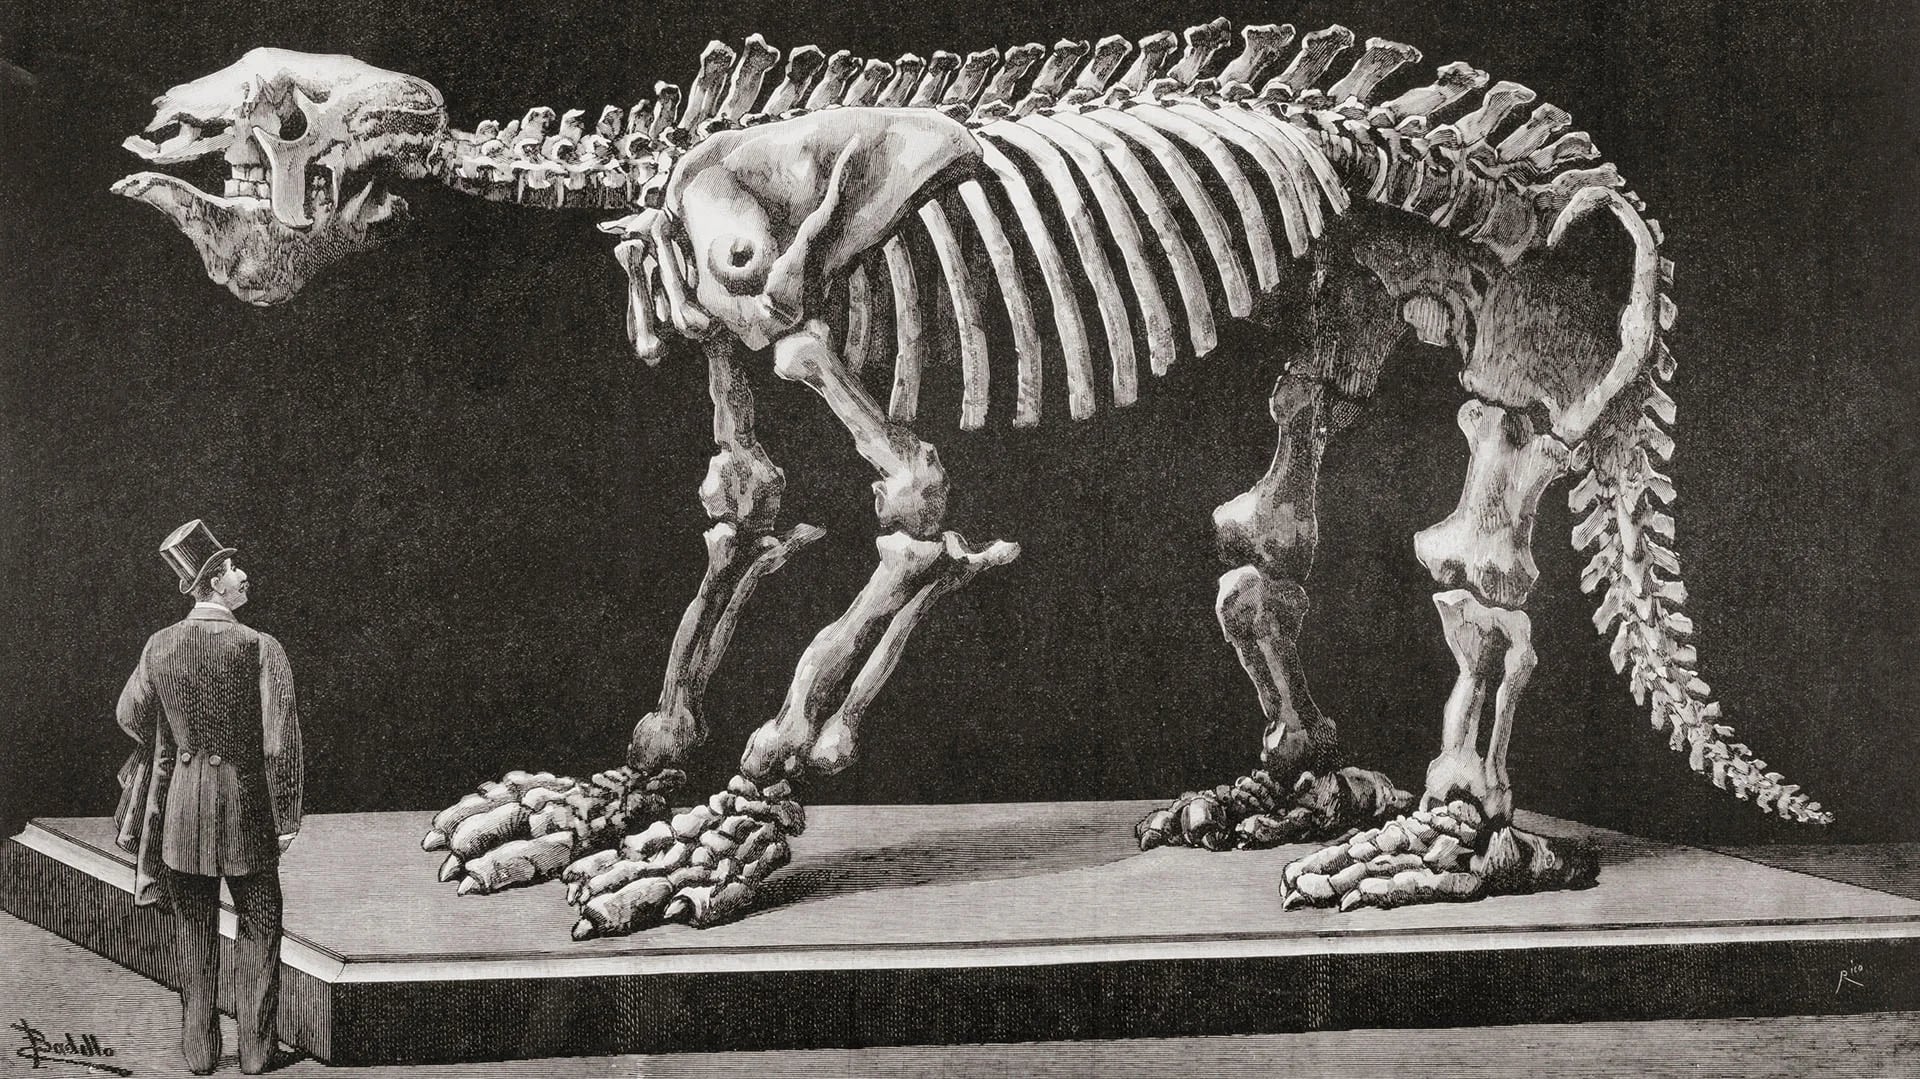 Los megaterios medían entre 3 y 4 metros  de largo y usualmente se desplazaban sobre sus cuatro patas, valiéndose de sus afiladas garras para cavar madrigueras.